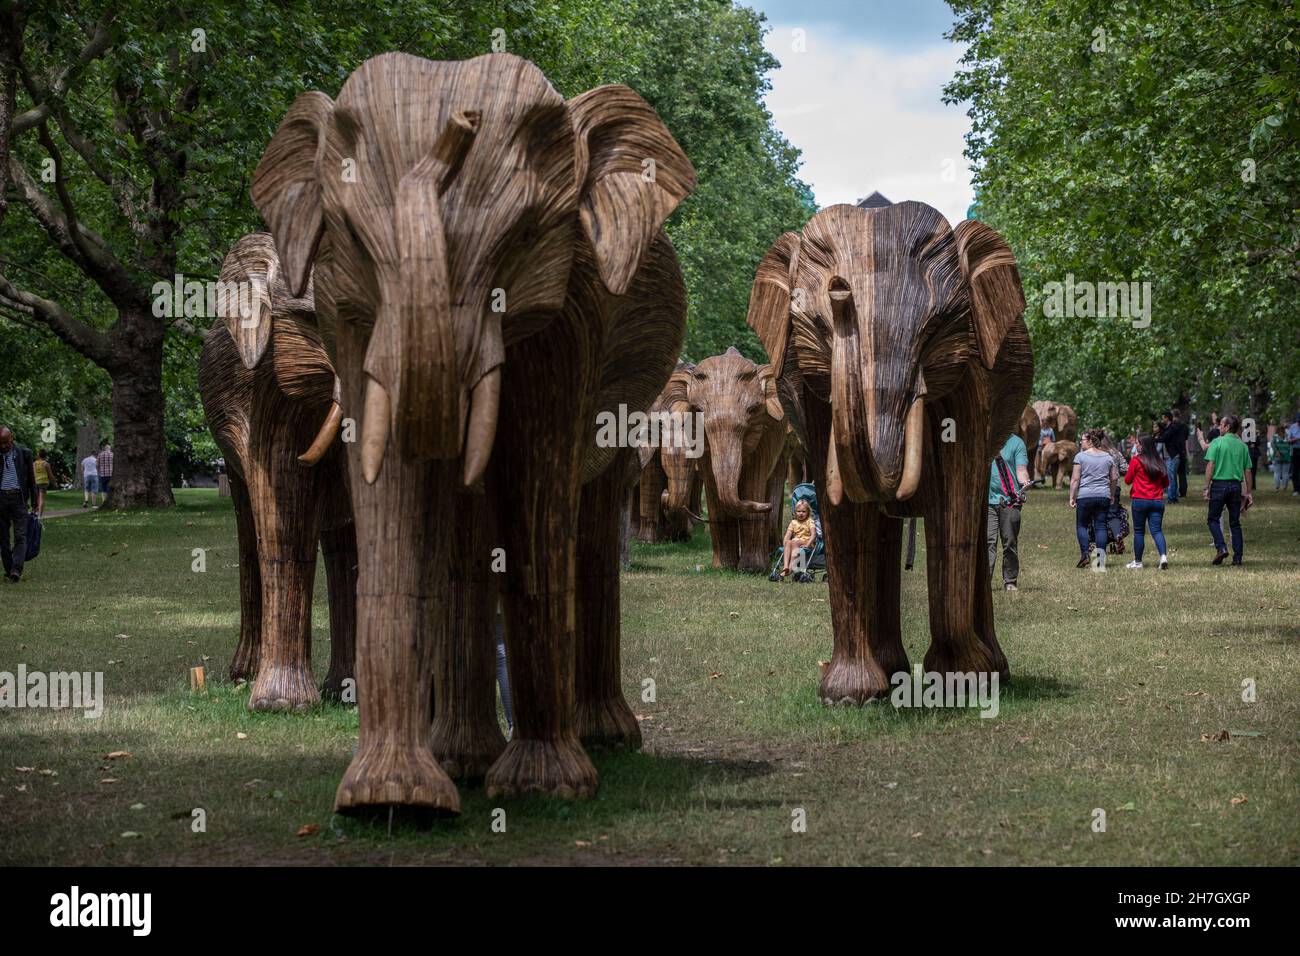 Exposition d'art environnemental de coexistence avec 100 éléphants de lantana grandeur nature à Green Park, amassé plus de 3 millions de livres pour des projets humains-animaux sauvages à Londres. Banque D'Images